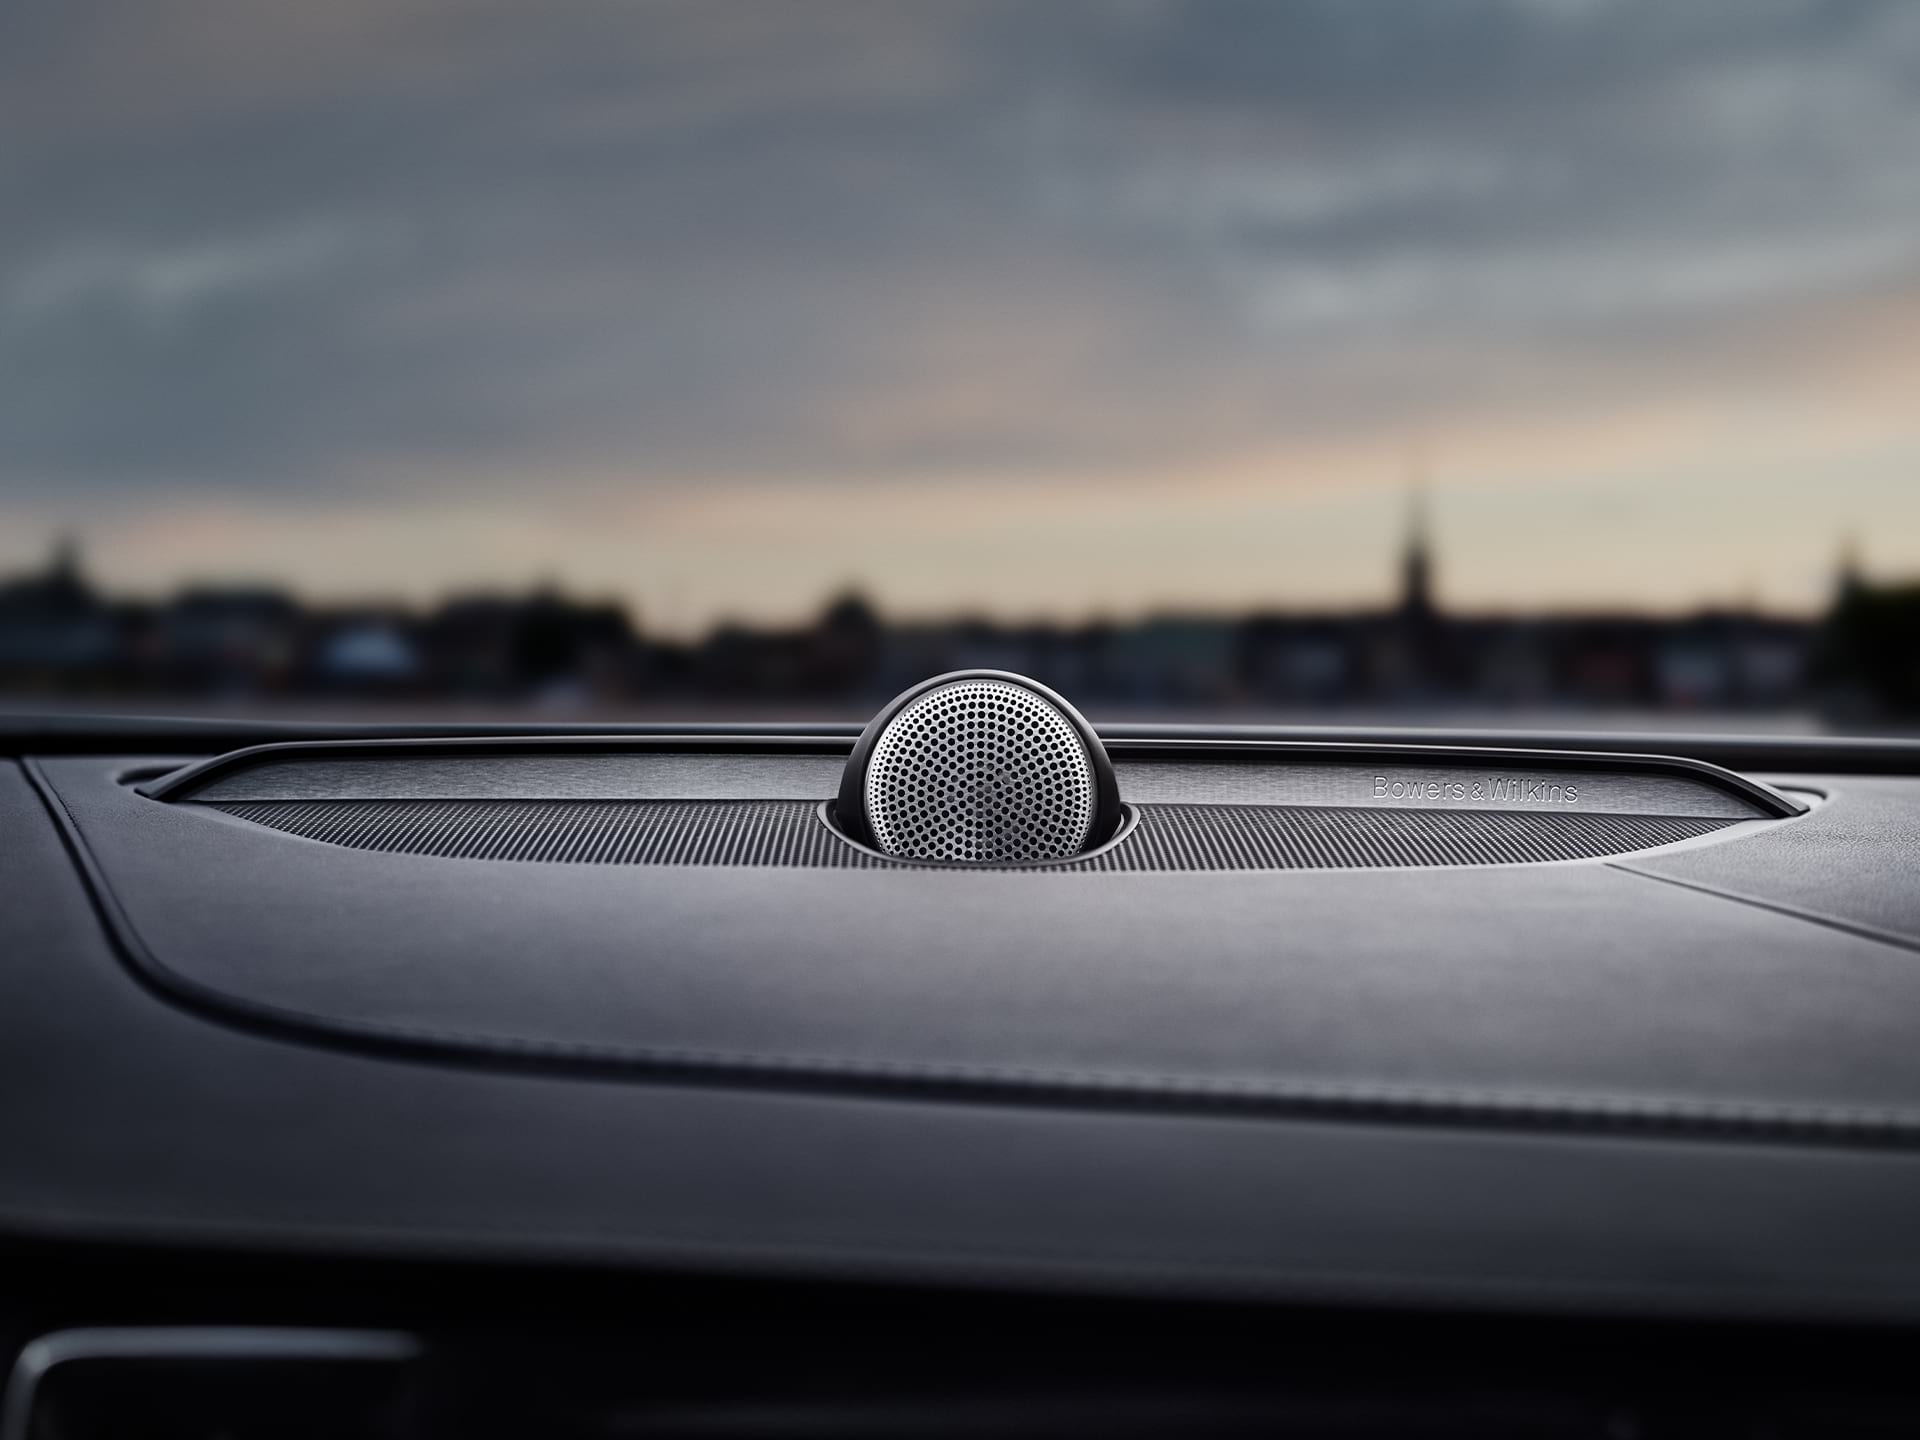 แอปพลิเคชันในรถยนต์ให้บริการผ่าน Google Play ใน S90 Recharge